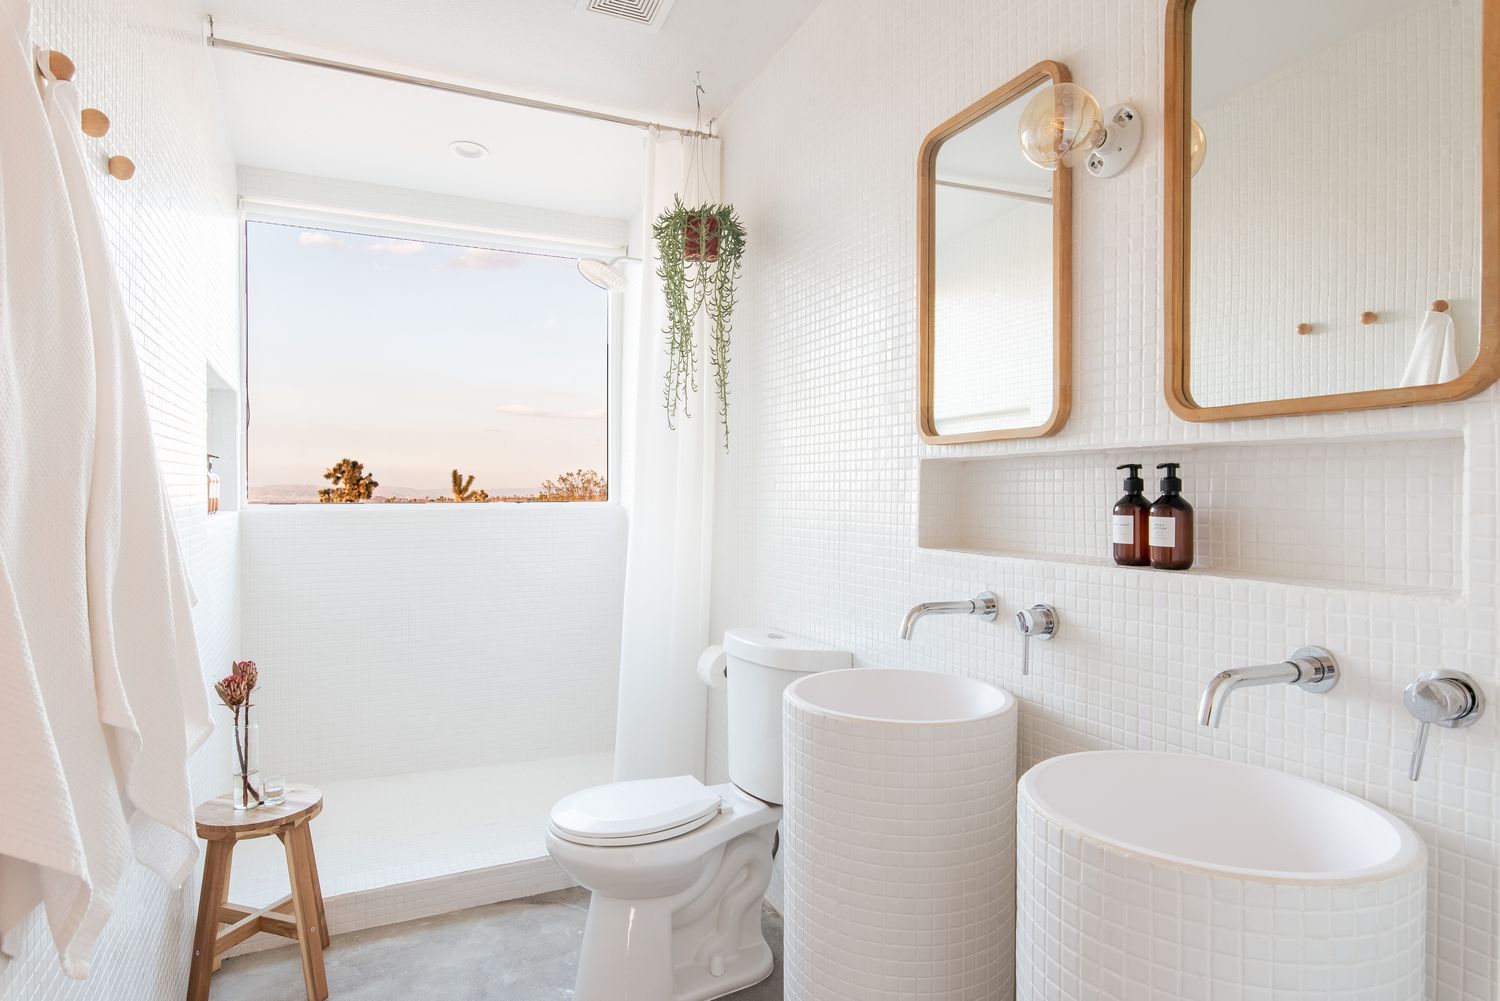 Kleines umgebautes Badezimmer ganz in Weiß mit Hängepflanze, weißen Mosaikfliesen und Duschfenster